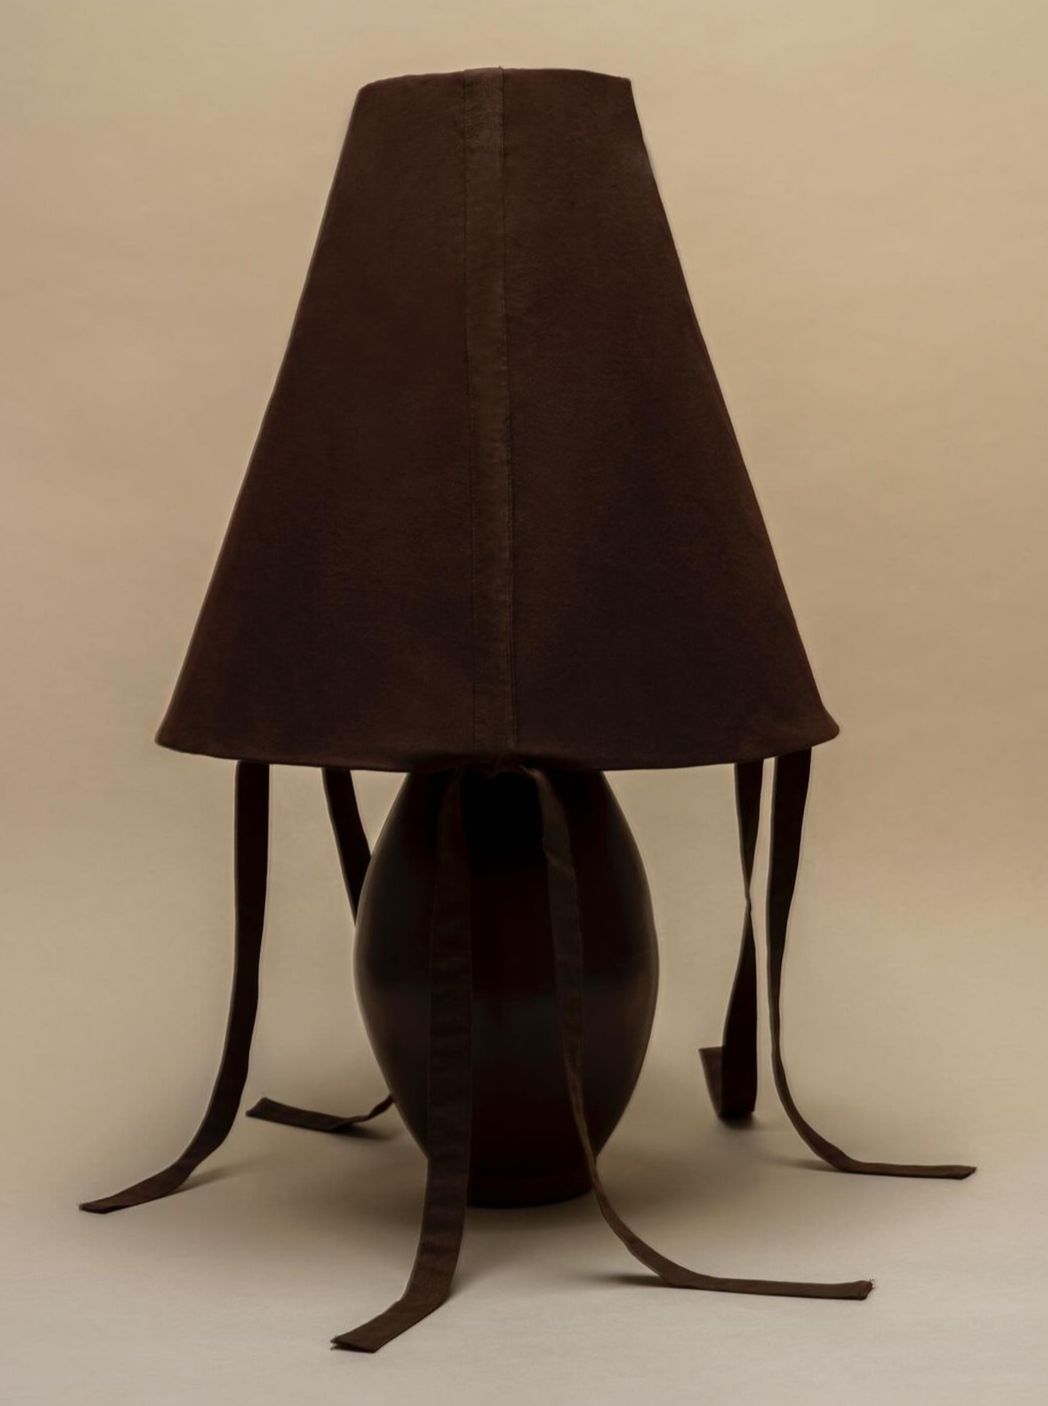 Brown Ceramic Large Lamp